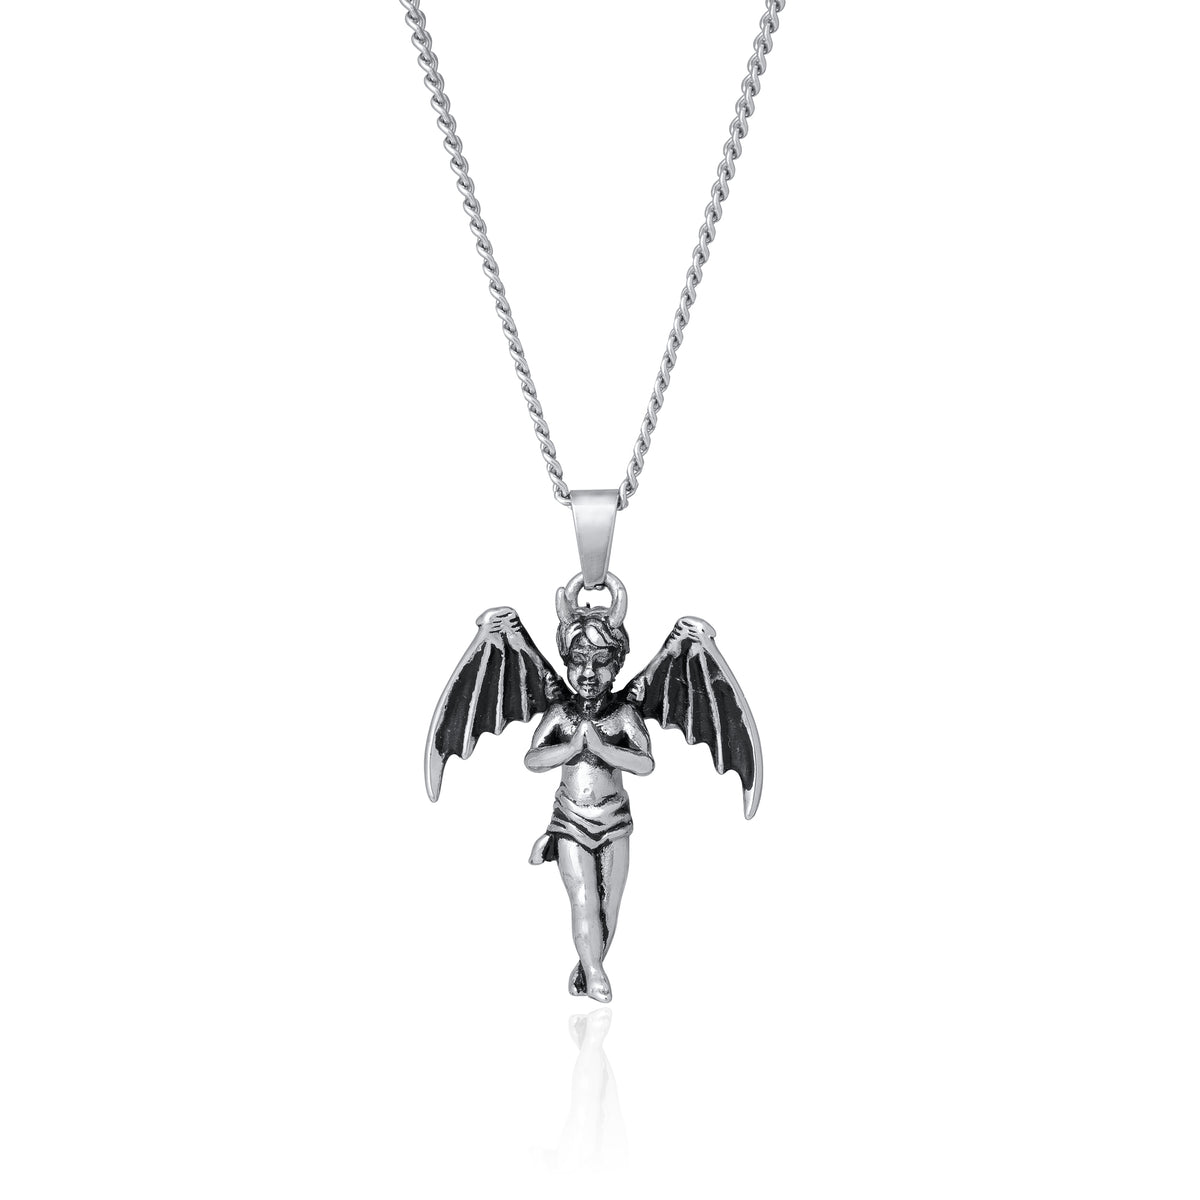 Dark angel charm chain necklace